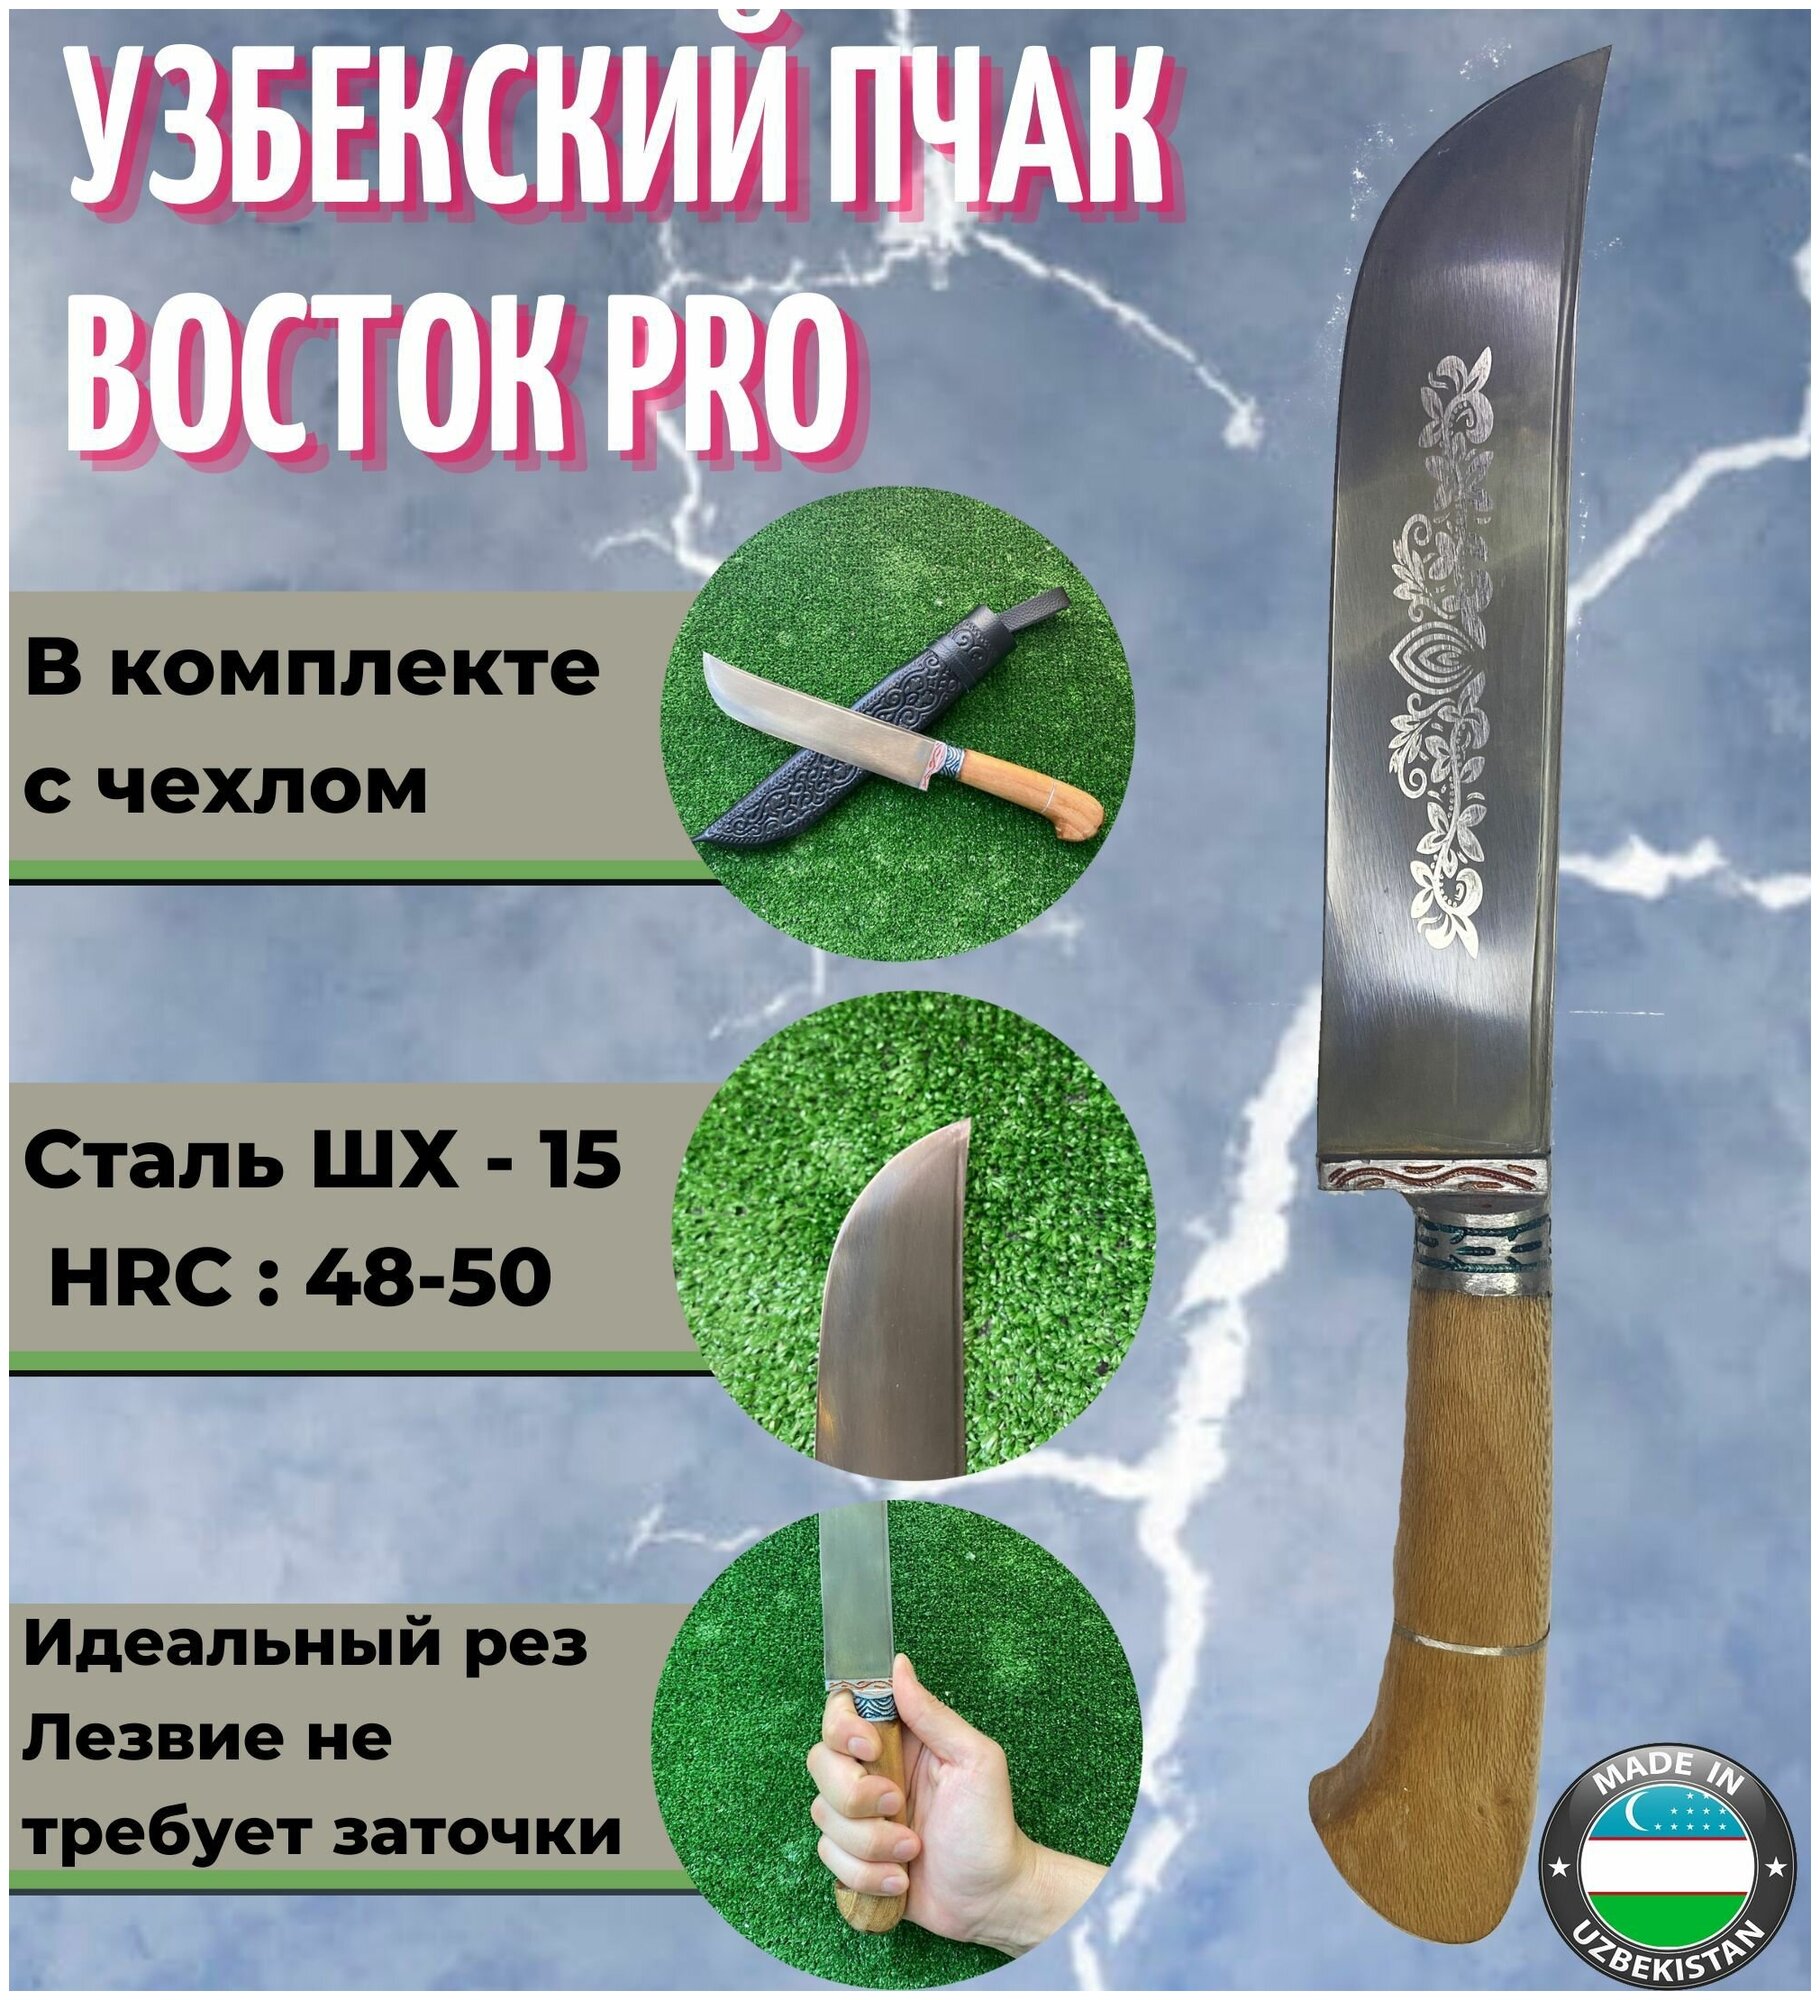 Узбекский нож Пчак Восток PRO 29 см.